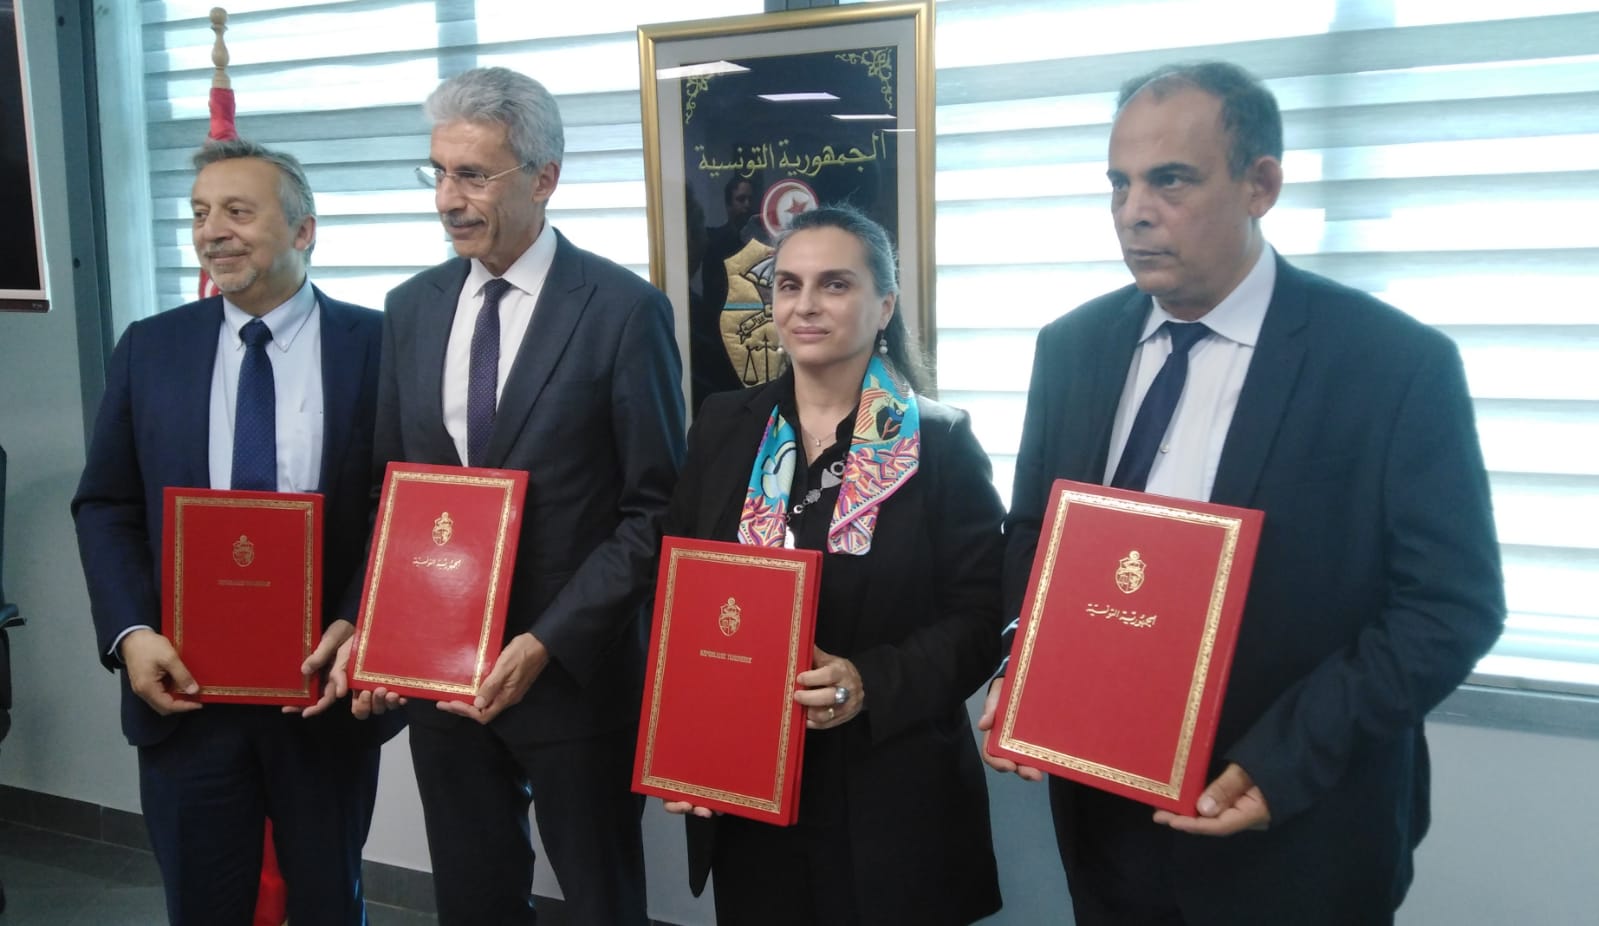  تونس- البنك الدولي:  التوقيع على تمويل بقيمة 377 مليون دينار من البنك الدولي لفائدة الديوان الوطني للتطهير   